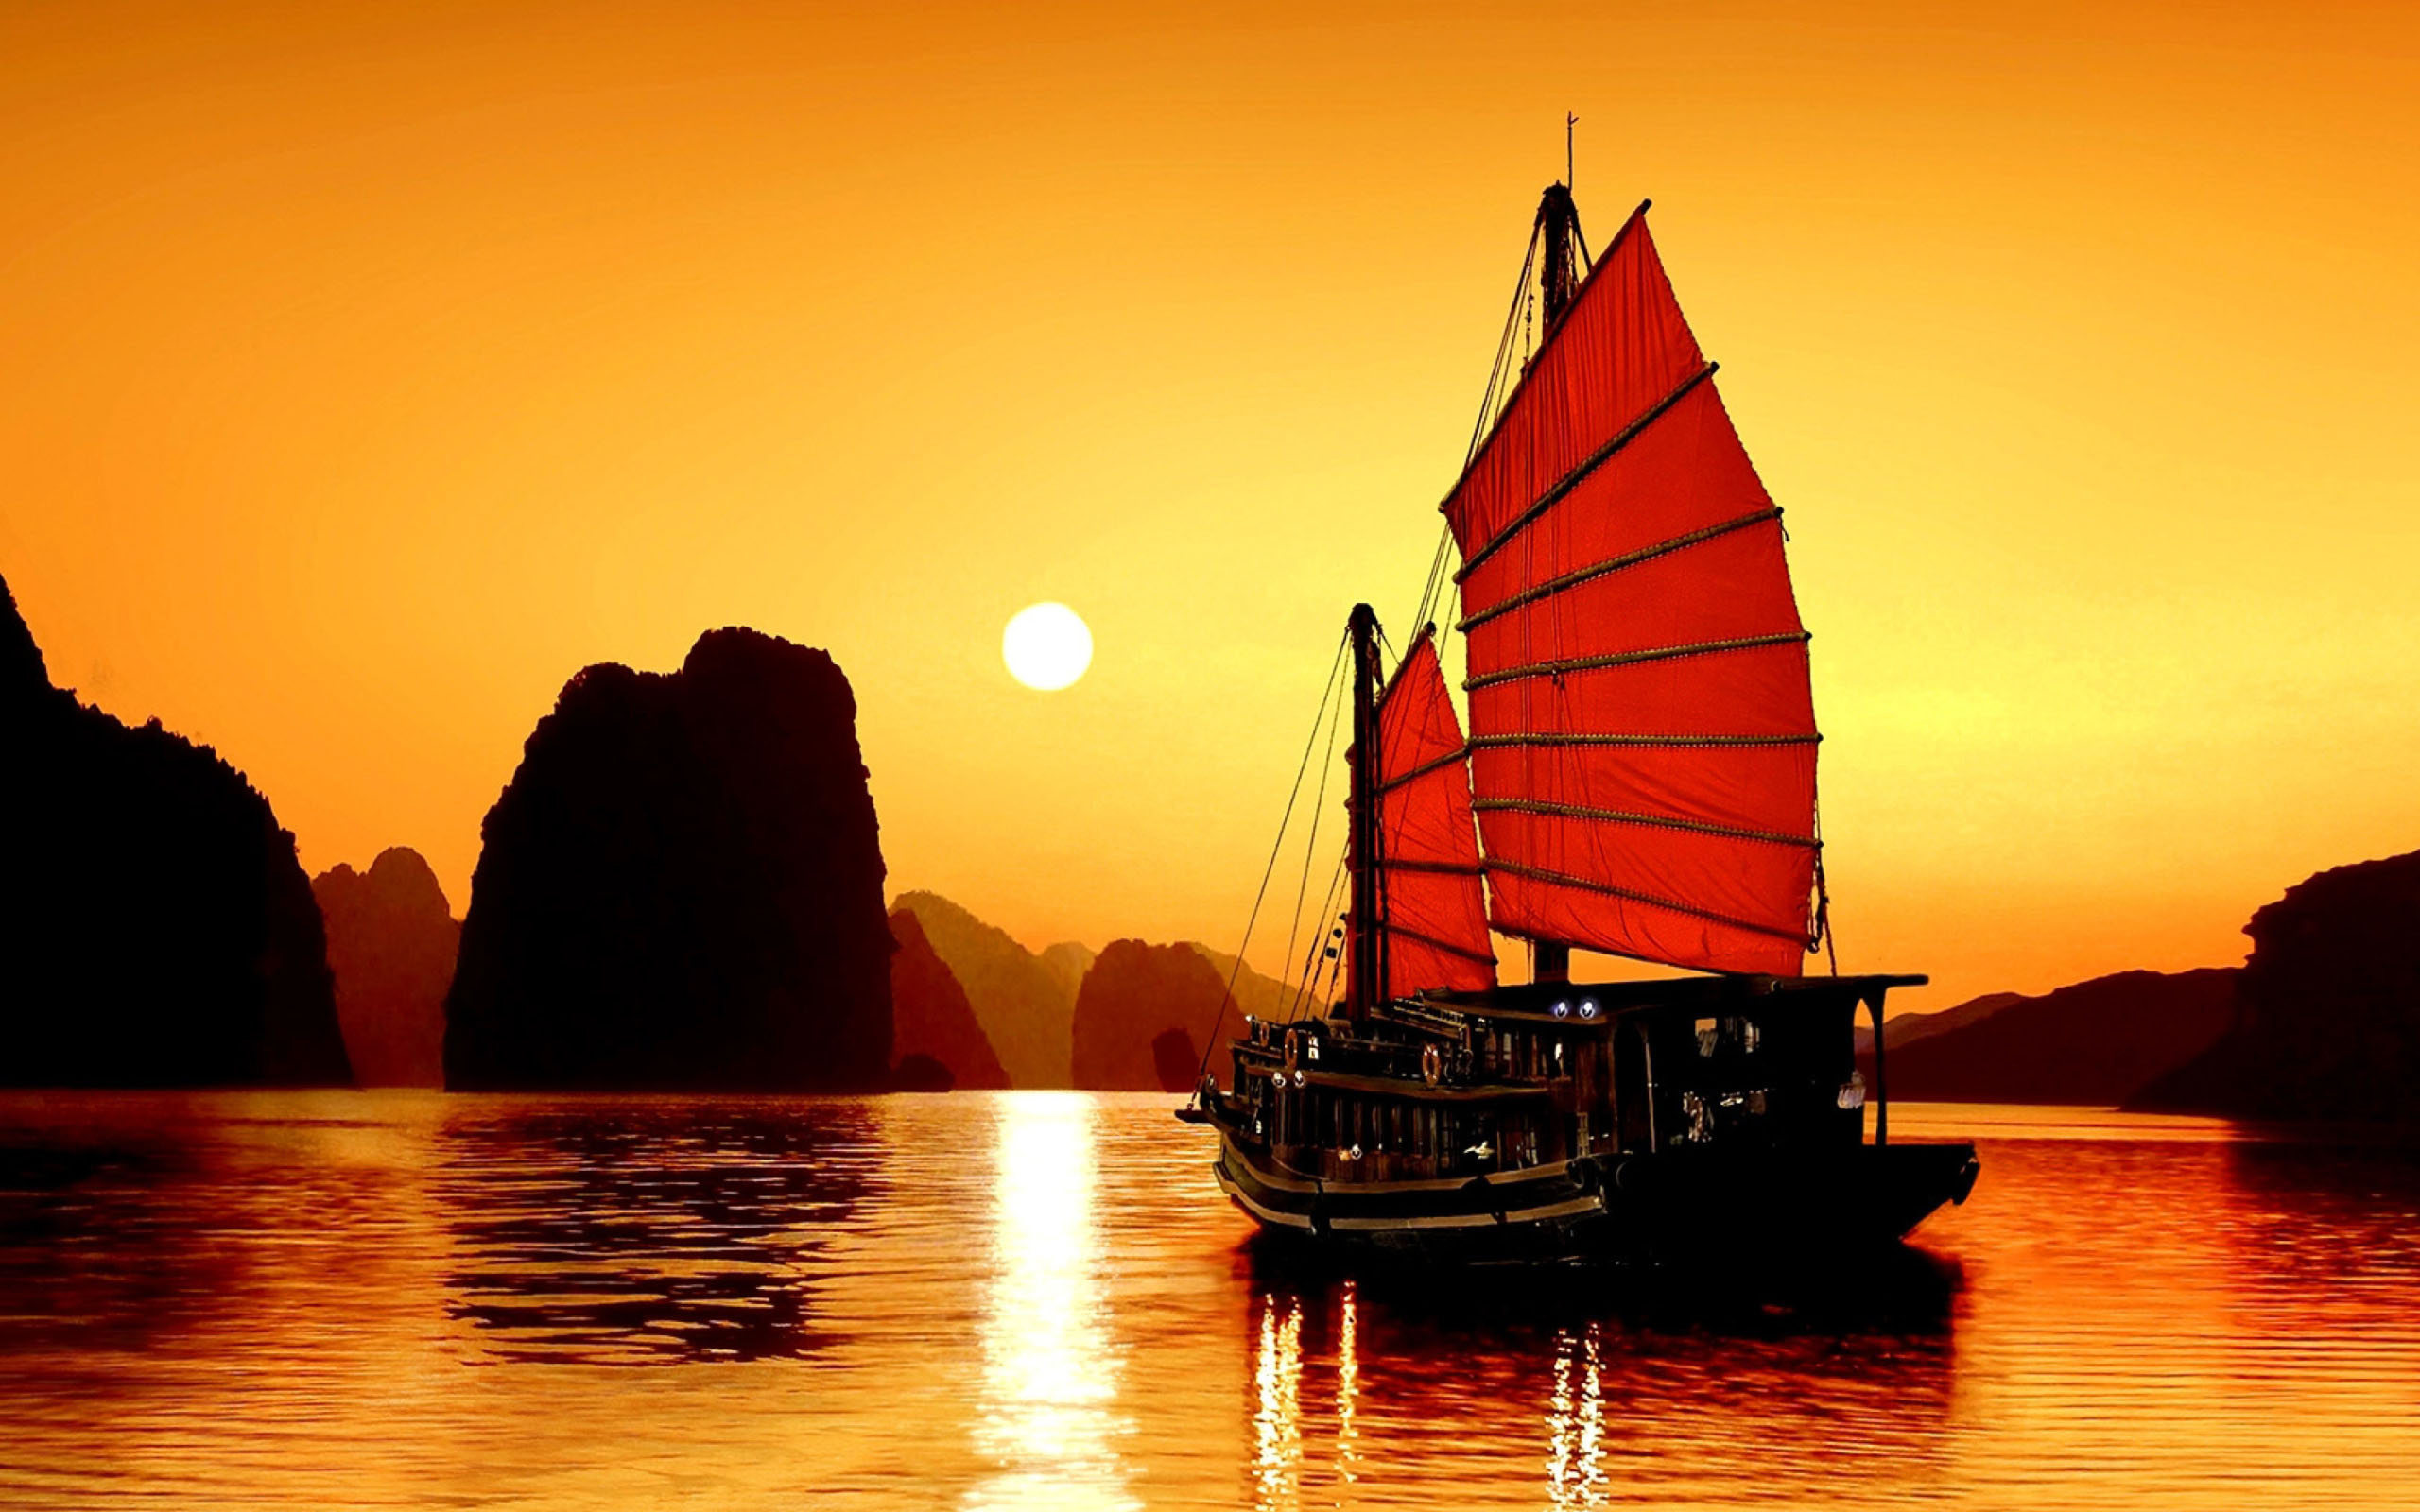 Địa điểm du lịch luôn là điều đáng mong đợi khi bạn muốn thư giãn và khám phá vẻ đẹp của thiên nhiên. Hãy đến với những địa điểm hấp dẫn như Bãi Biển, Vịnh Hạ Long, Rừng Quốc gia và nhiều địa điểm du lịch khác tại Việt Nam.